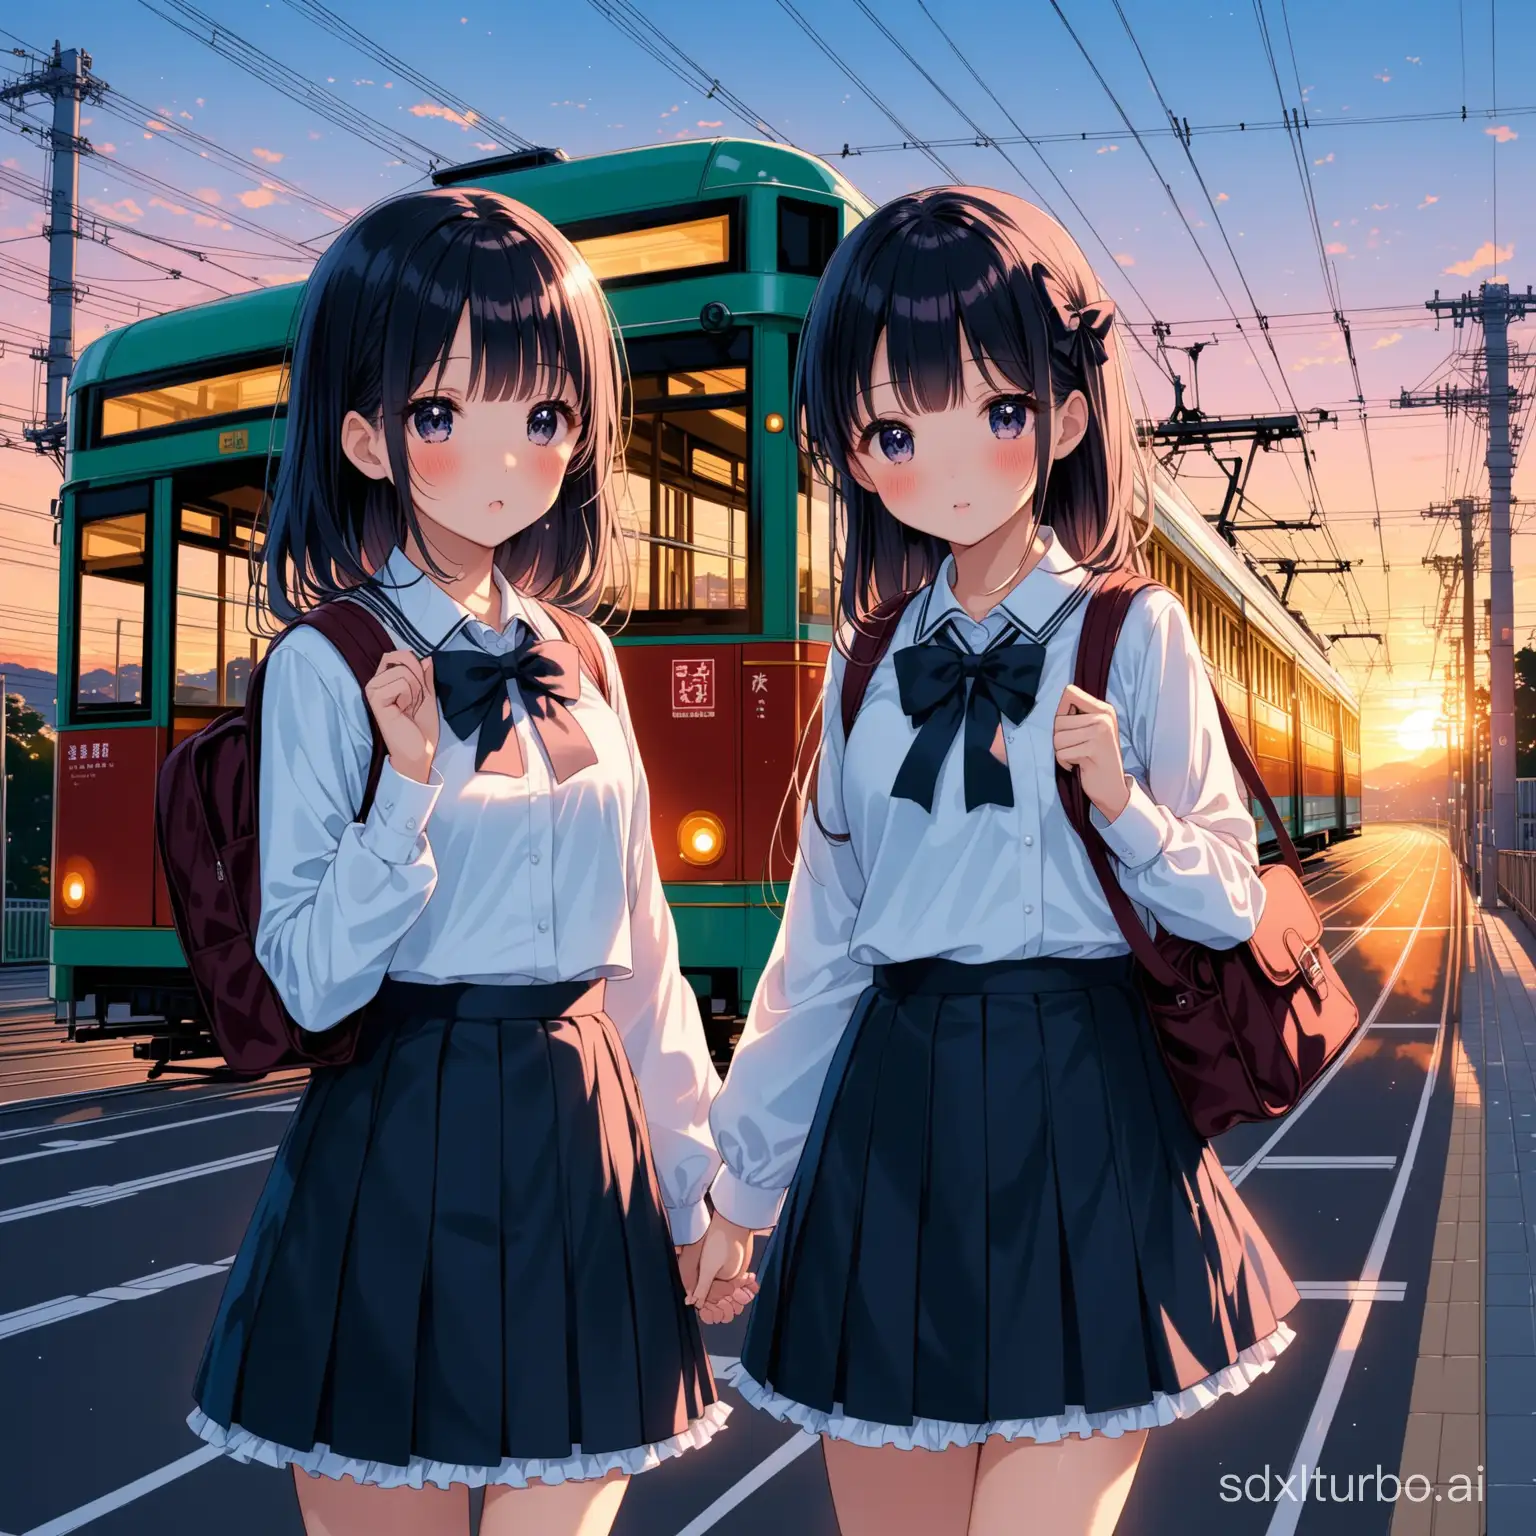 日本 街道 黄昏 电车 唯美 校服 萝莉 百合 小学生 两人